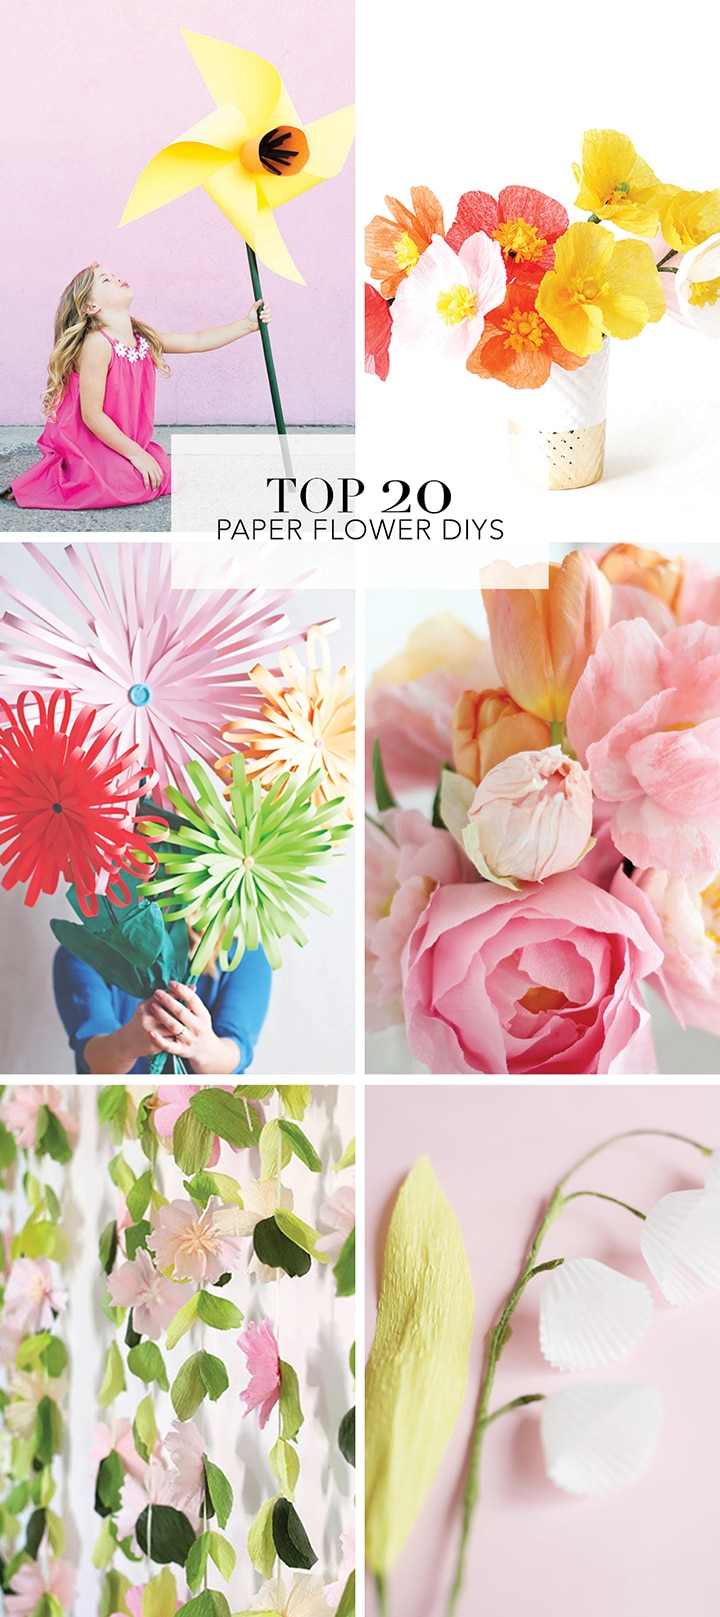 20 Best Paper Flower Tutorials to try!